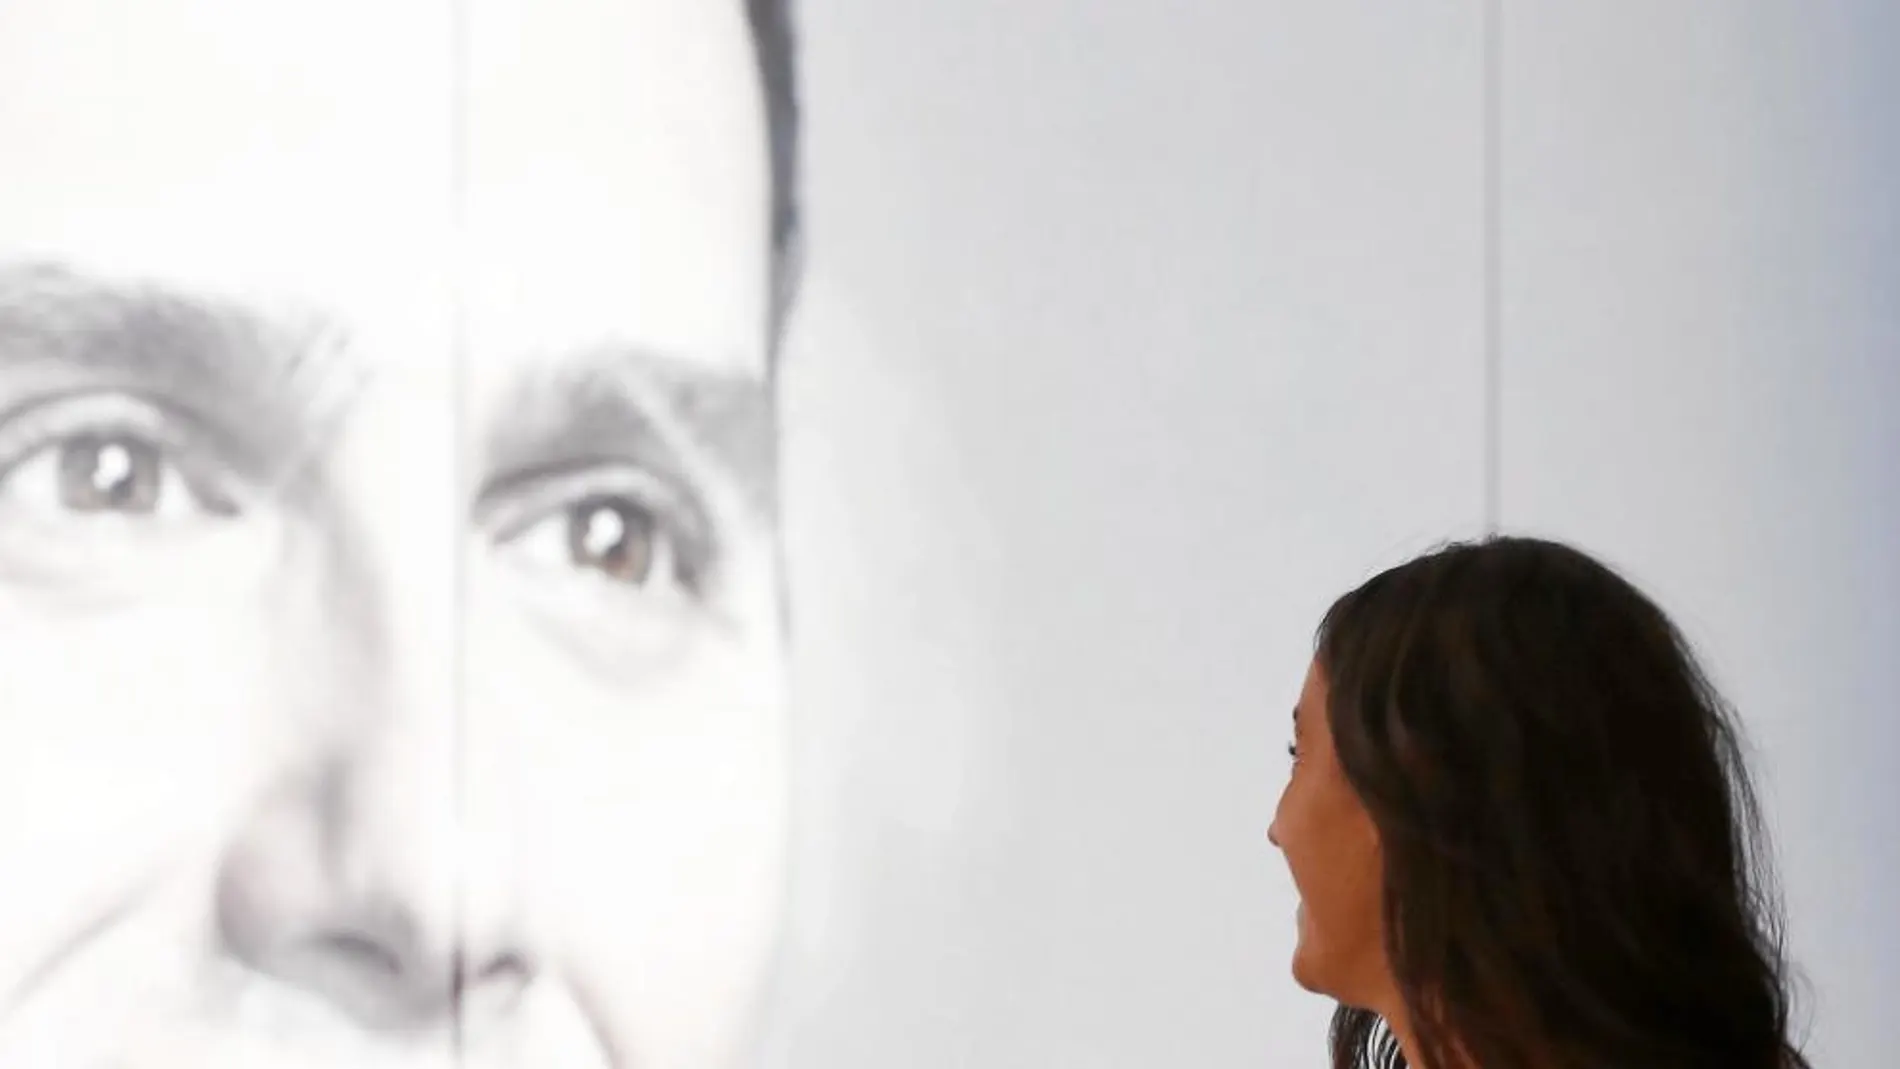 Begoña Villacís observa una imagen del líder de Ciudadanos, Albert Rivera